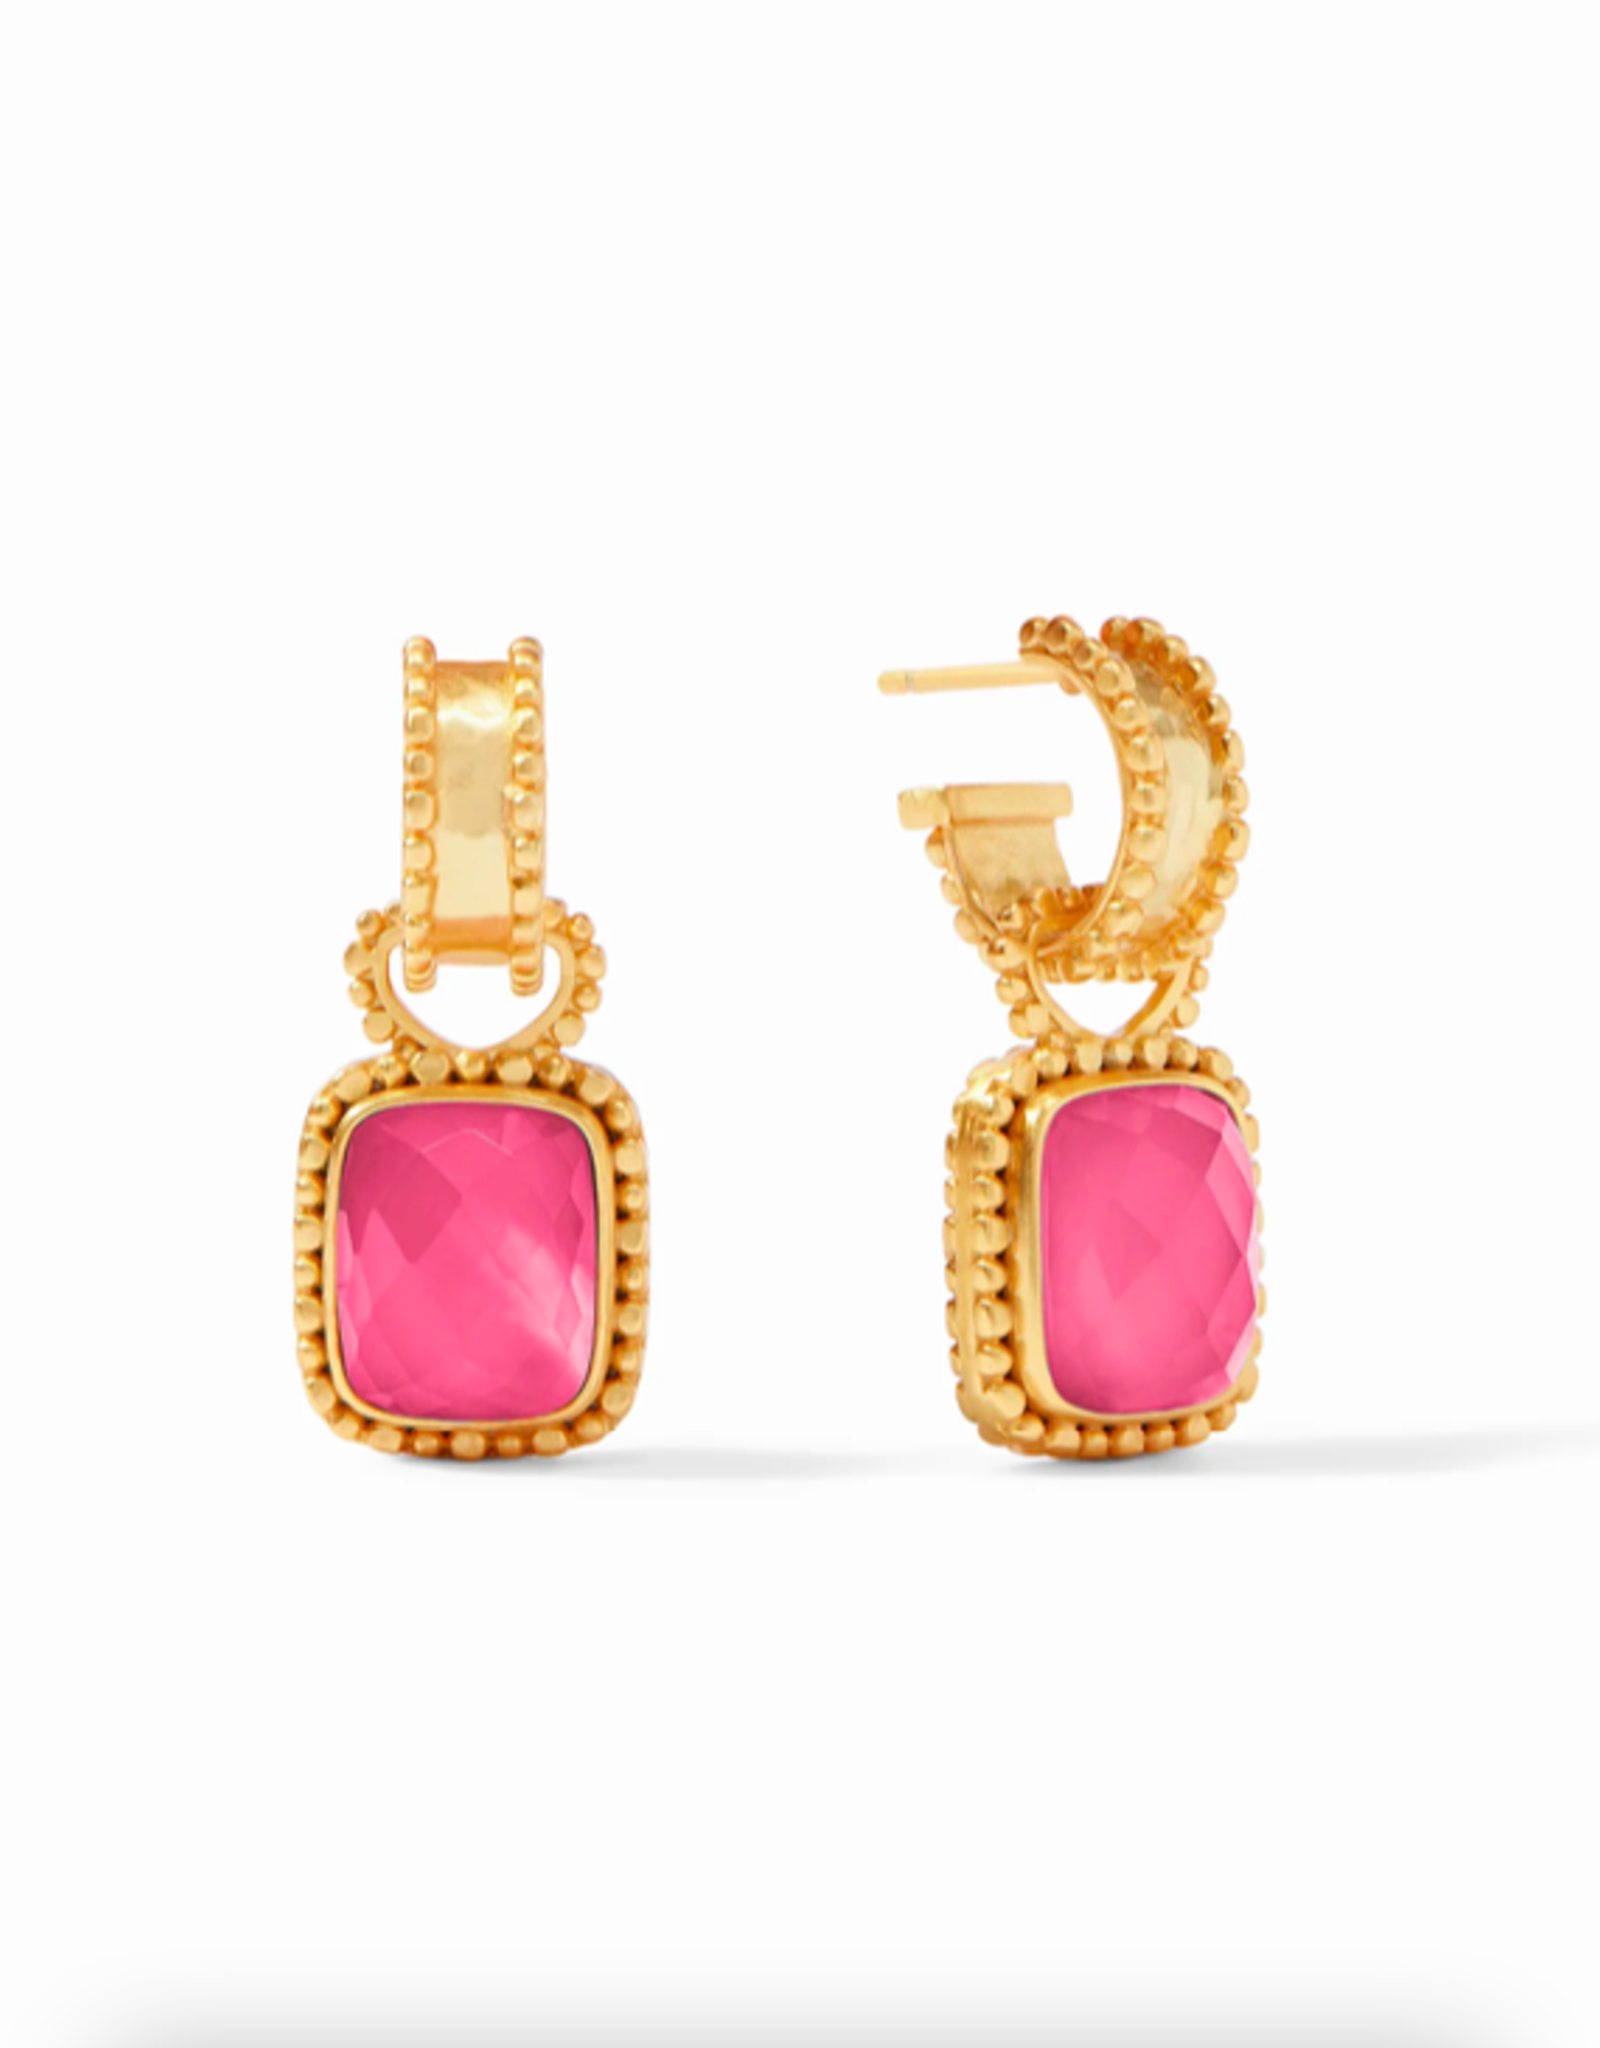 Julie Vos Julie Vos Marbella Hoop & Charm Earring Gold Irid. Peony Pink